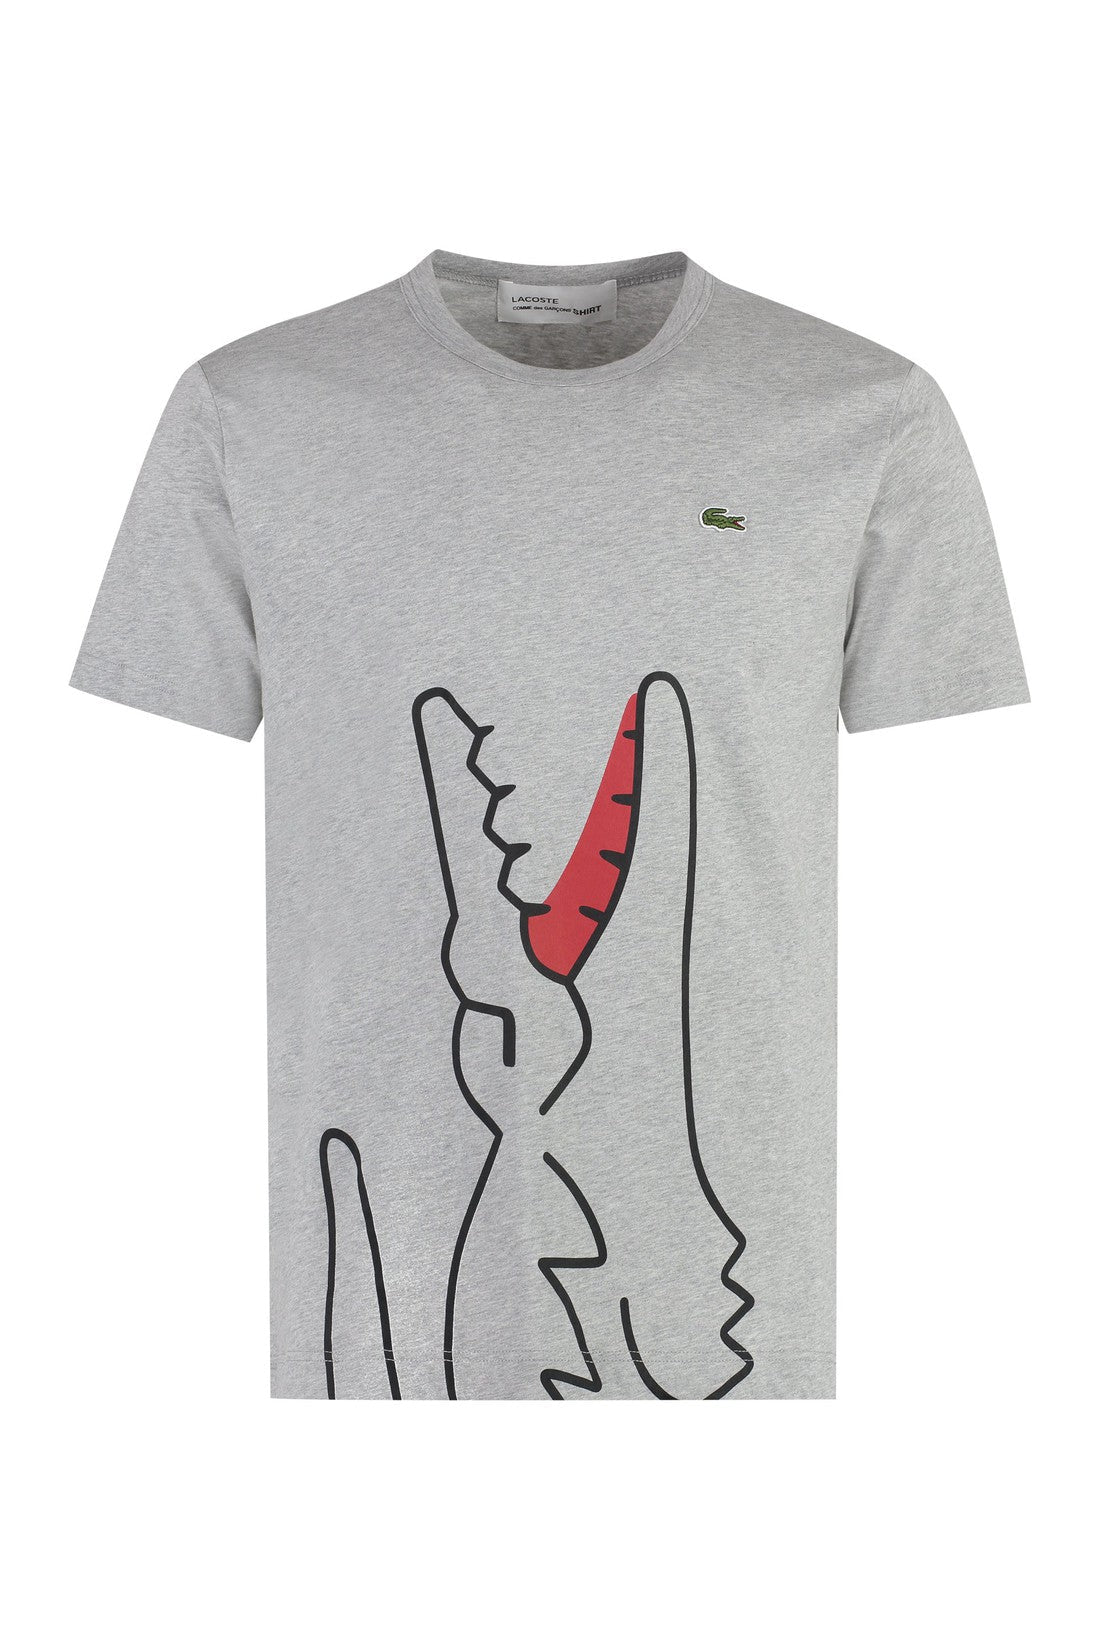 Comme des Garçons SHIRT-OUTLET-SALE-Lacoste x Comme des Garçons - Short sleeve printed cotton t-shirt-ARCHIVIST